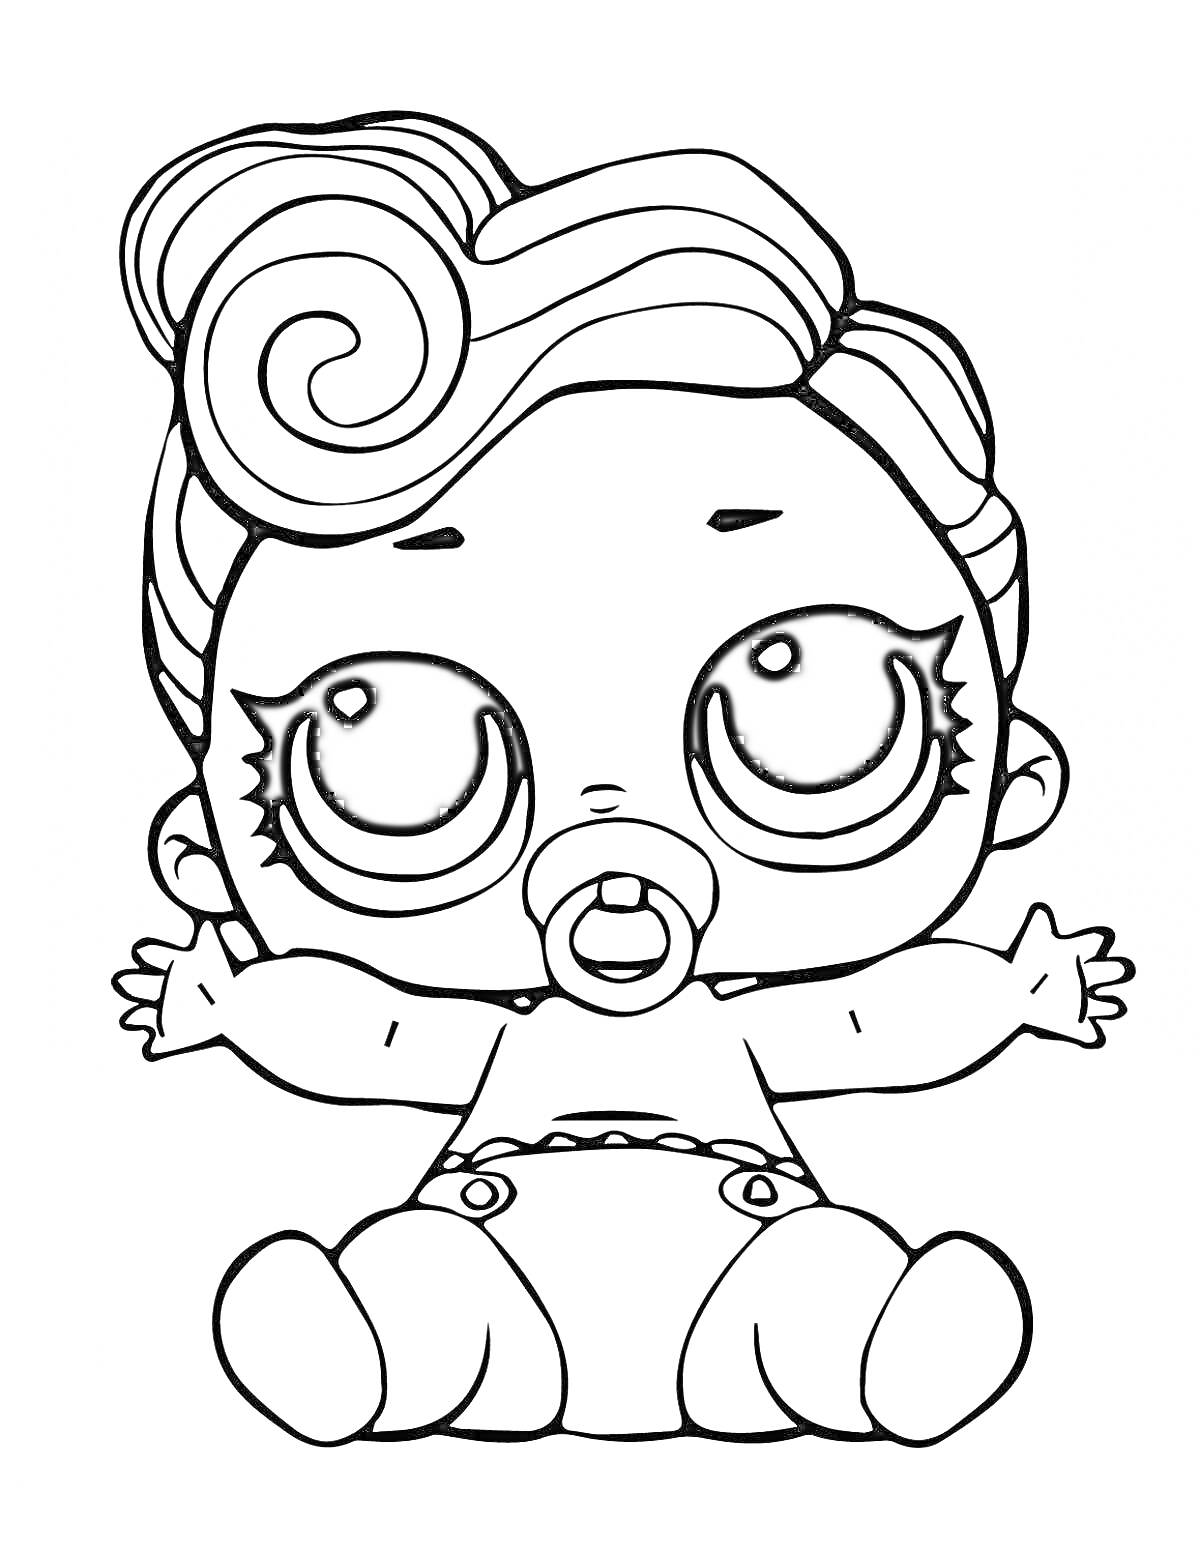 Куколка LOL с большими глазами, соской и завитыми волосами, сидящая с раскинутыми руками